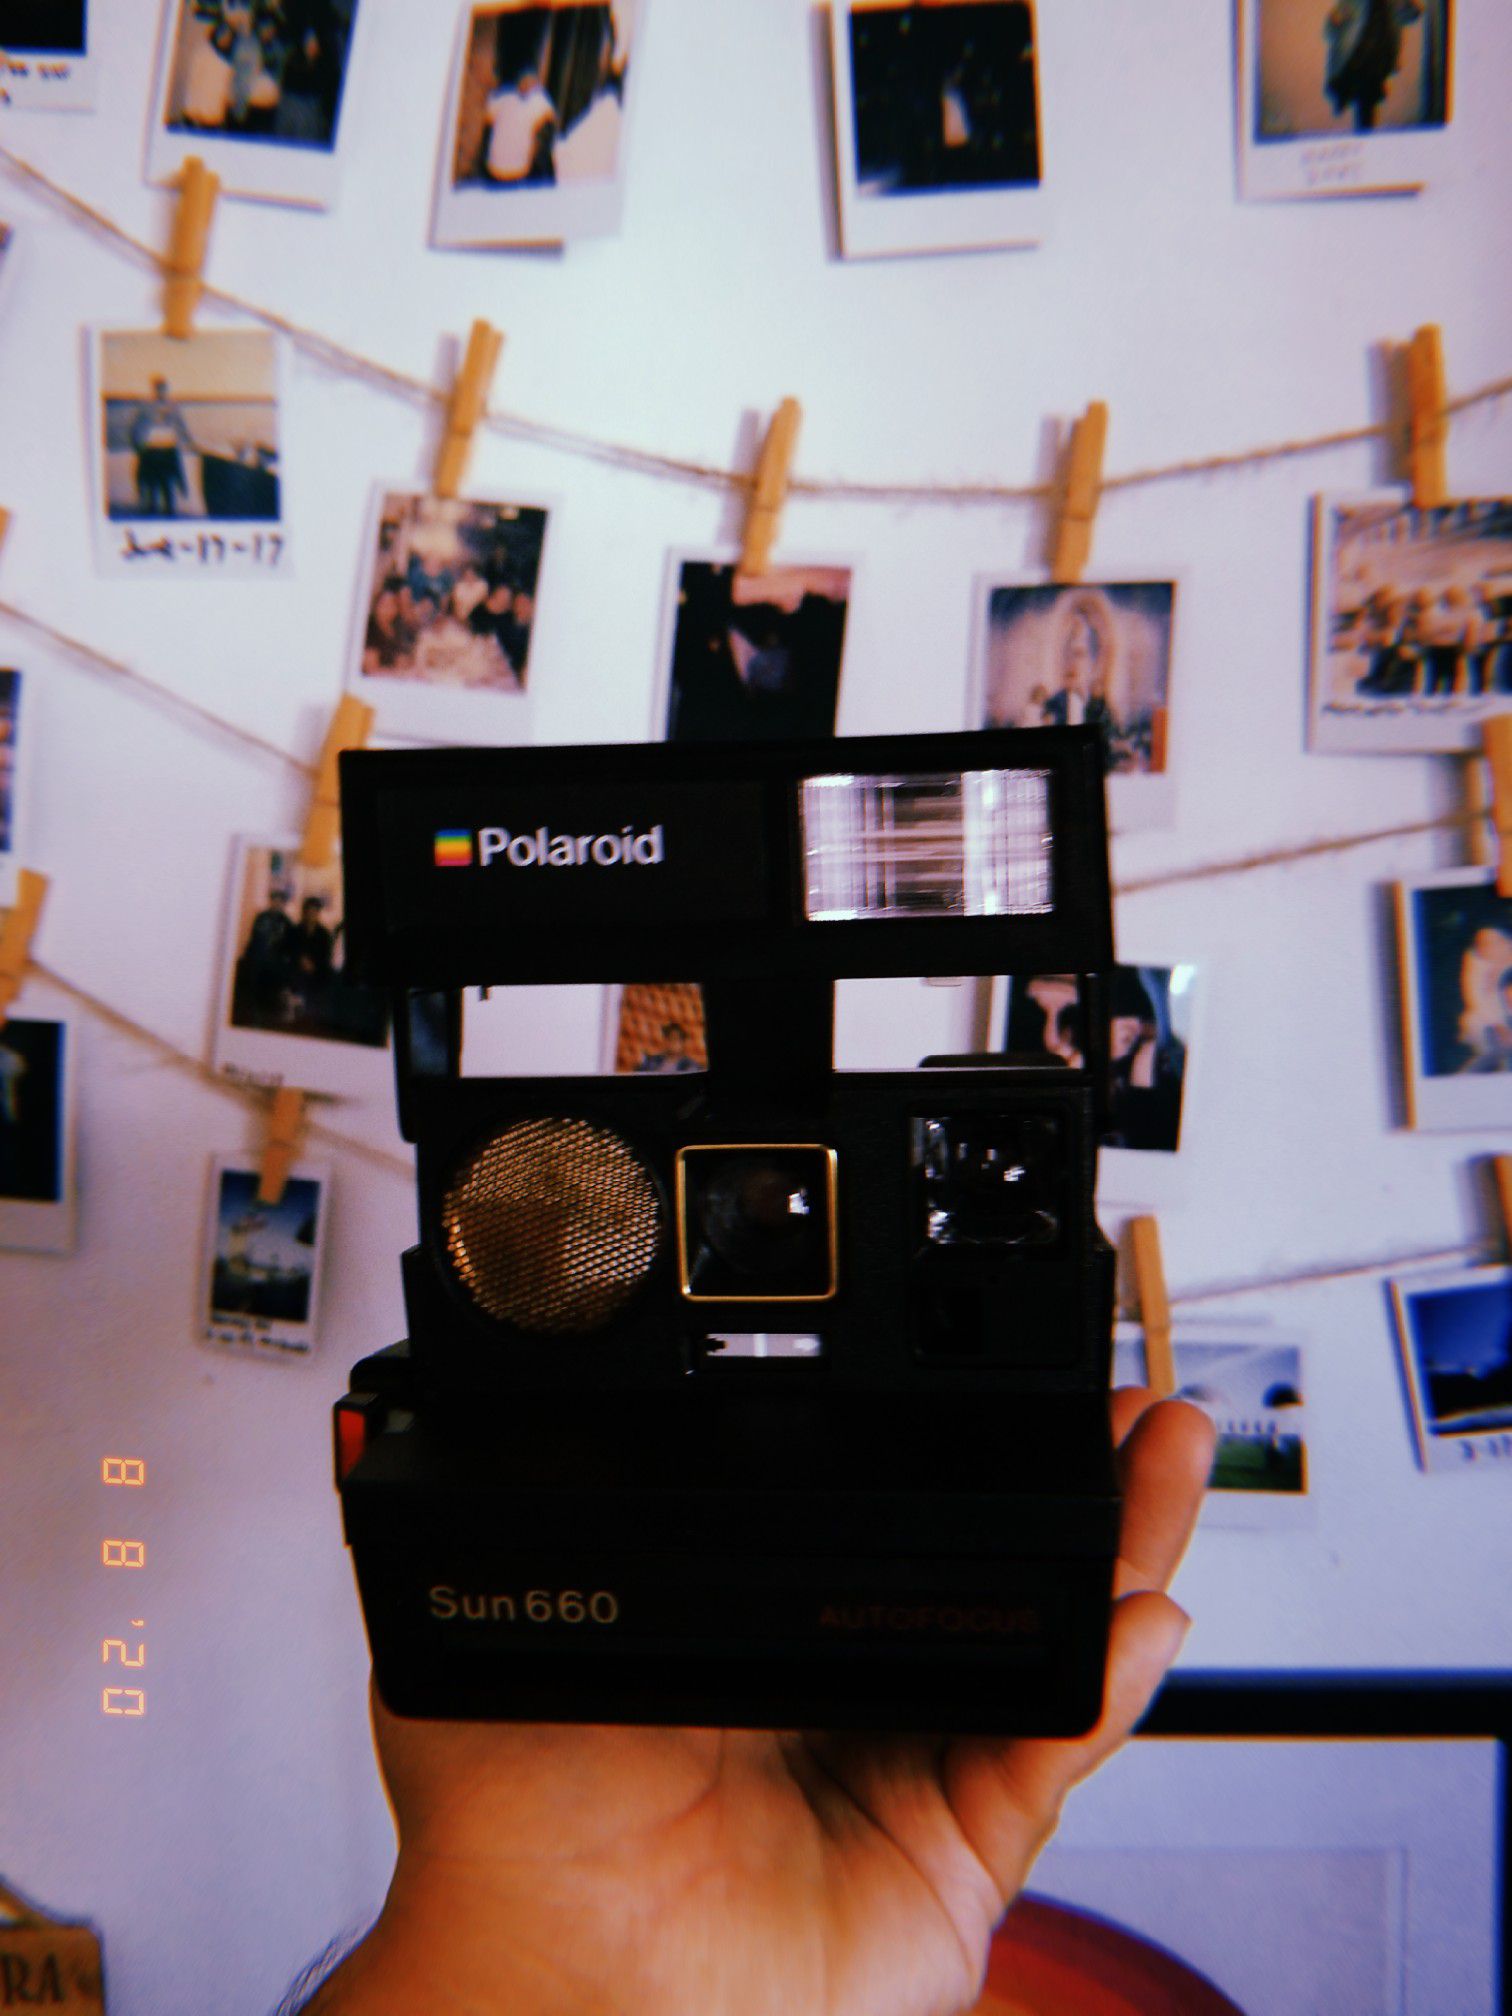 Polaroid sun 660